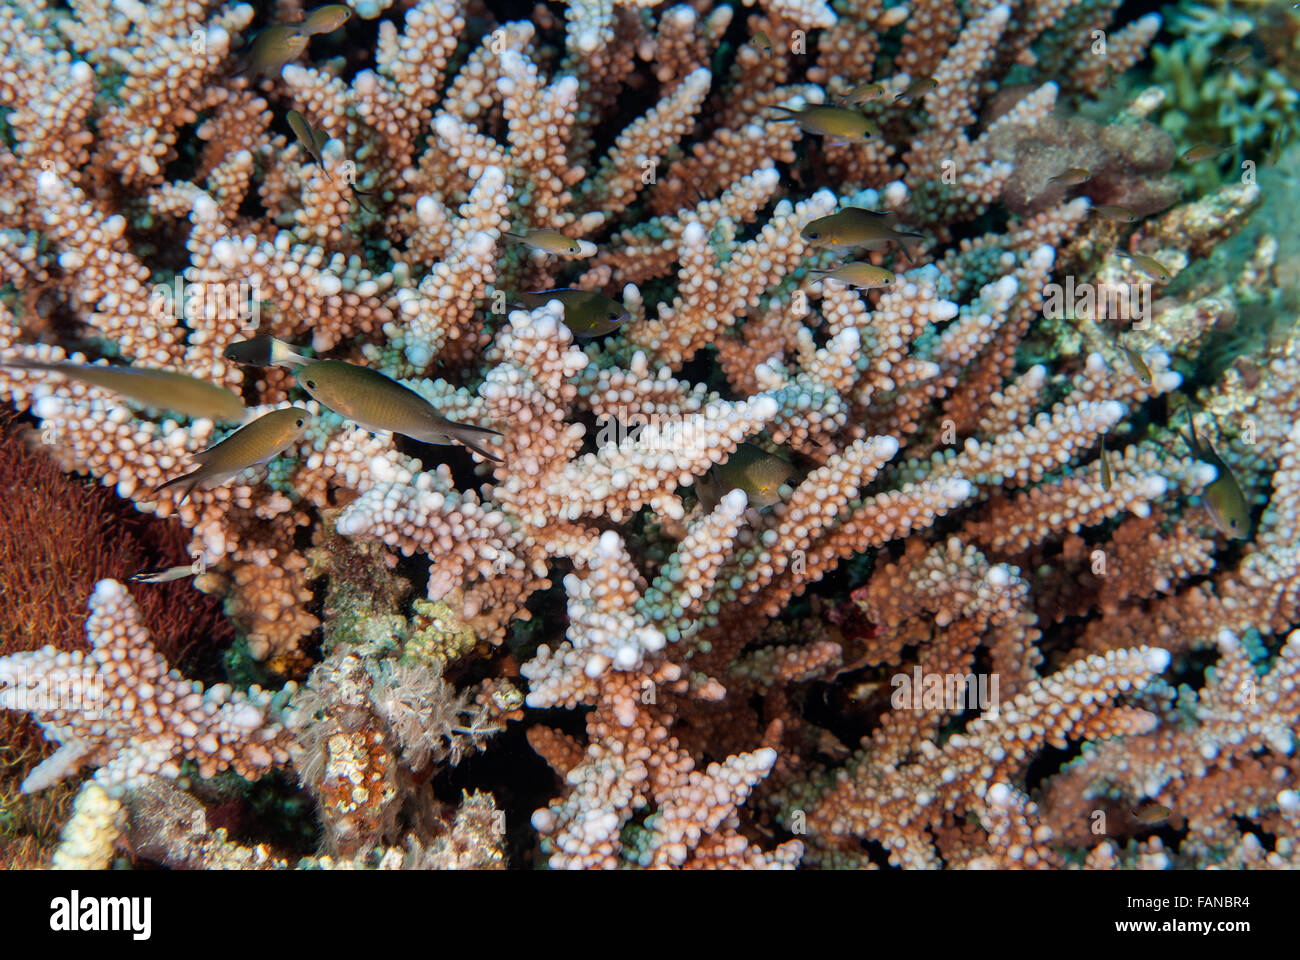 Stony coral Acropora nobilis, Acroporidae, Sharm el Sheikh, Red Sea, Egypt Stock Photo